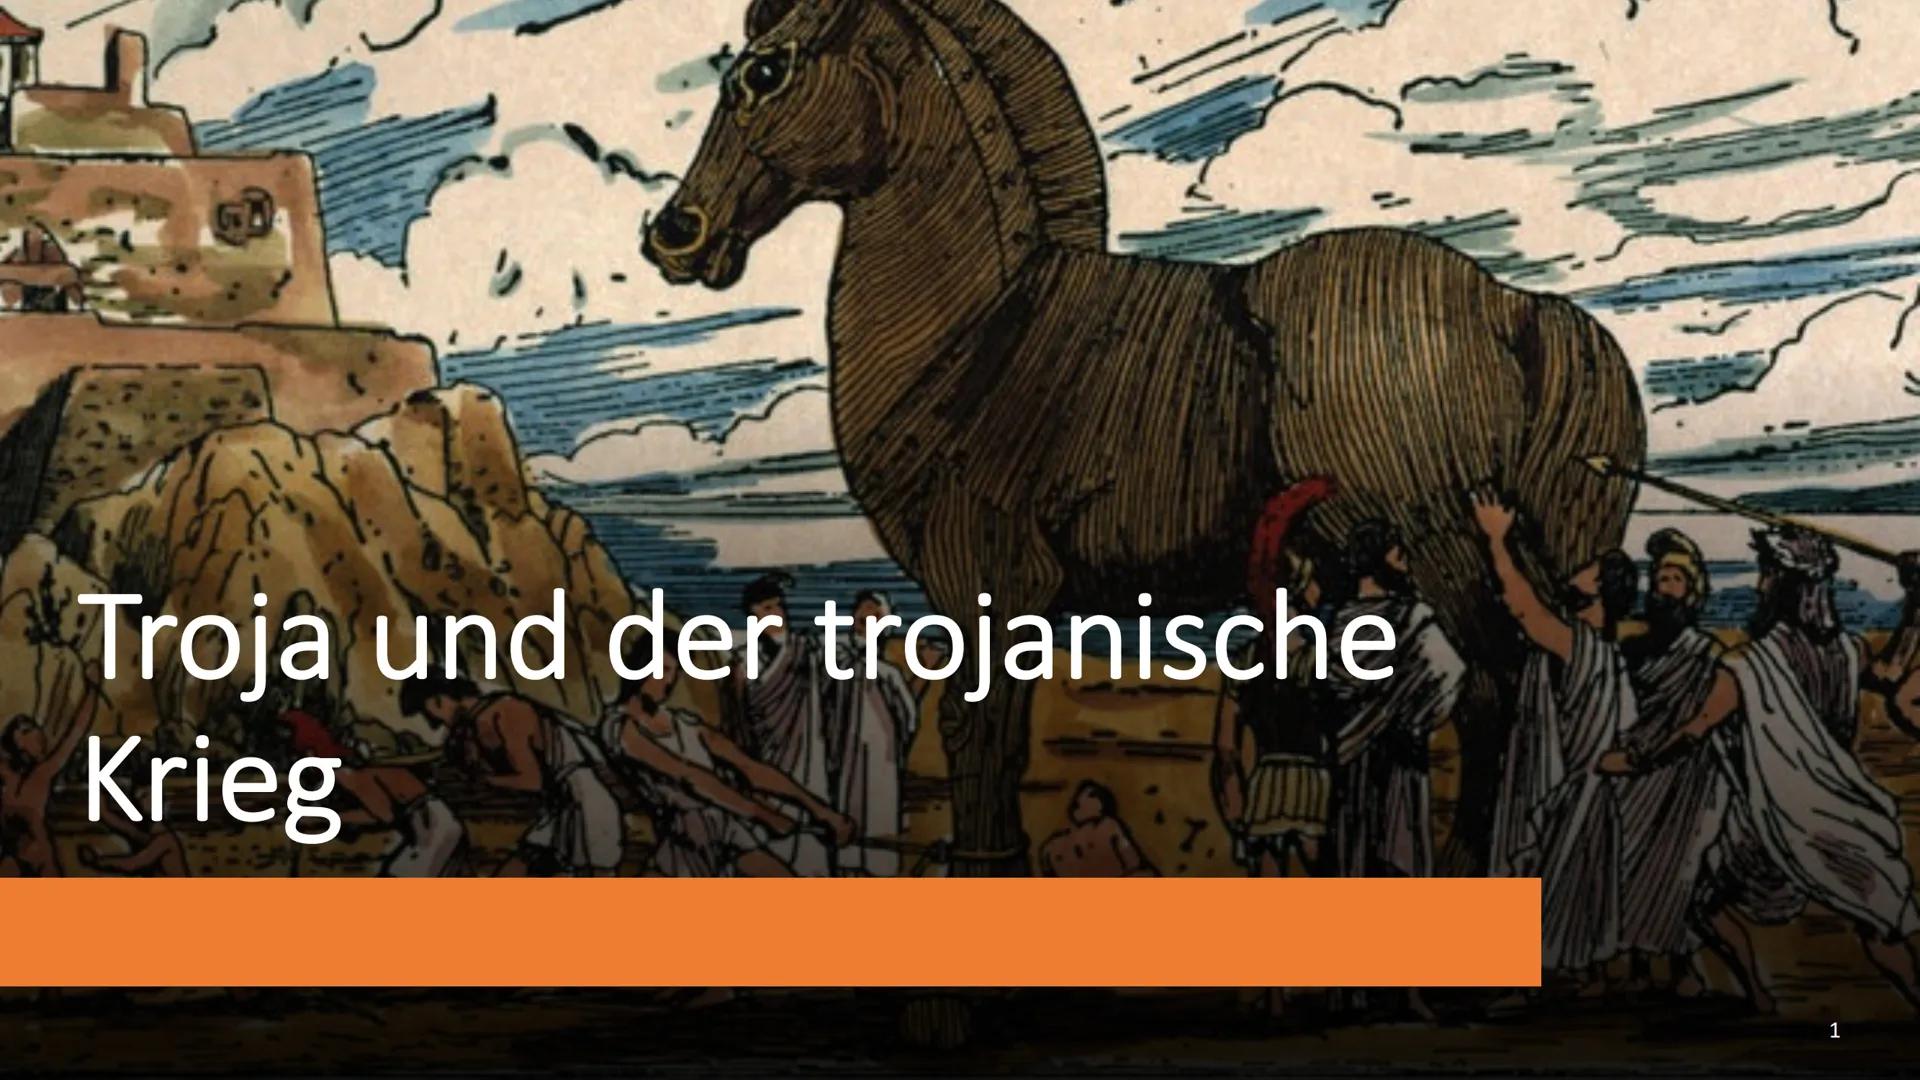 Troja und der trojanische Krieg - Handout
Wichtiger Teil der griechischen Mythologie
1 Vorgeschichte
Paris, Sohn des Königs von Troja, wird 